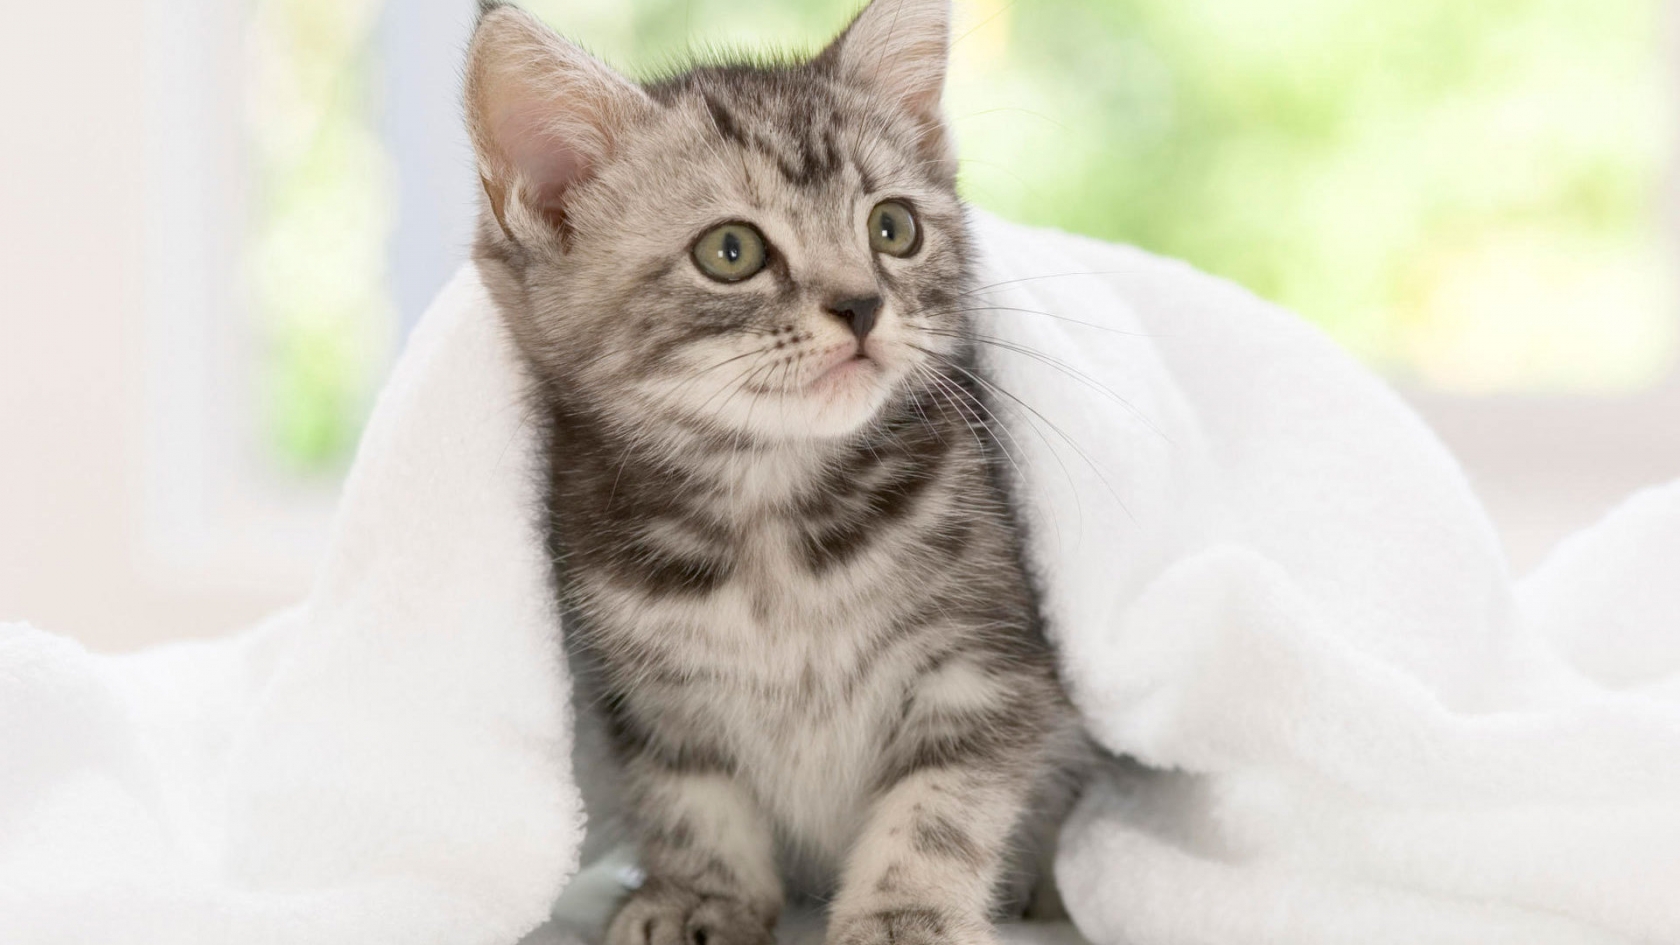 American Shorthair Kitten for 1680 x 945 HDTV resolution